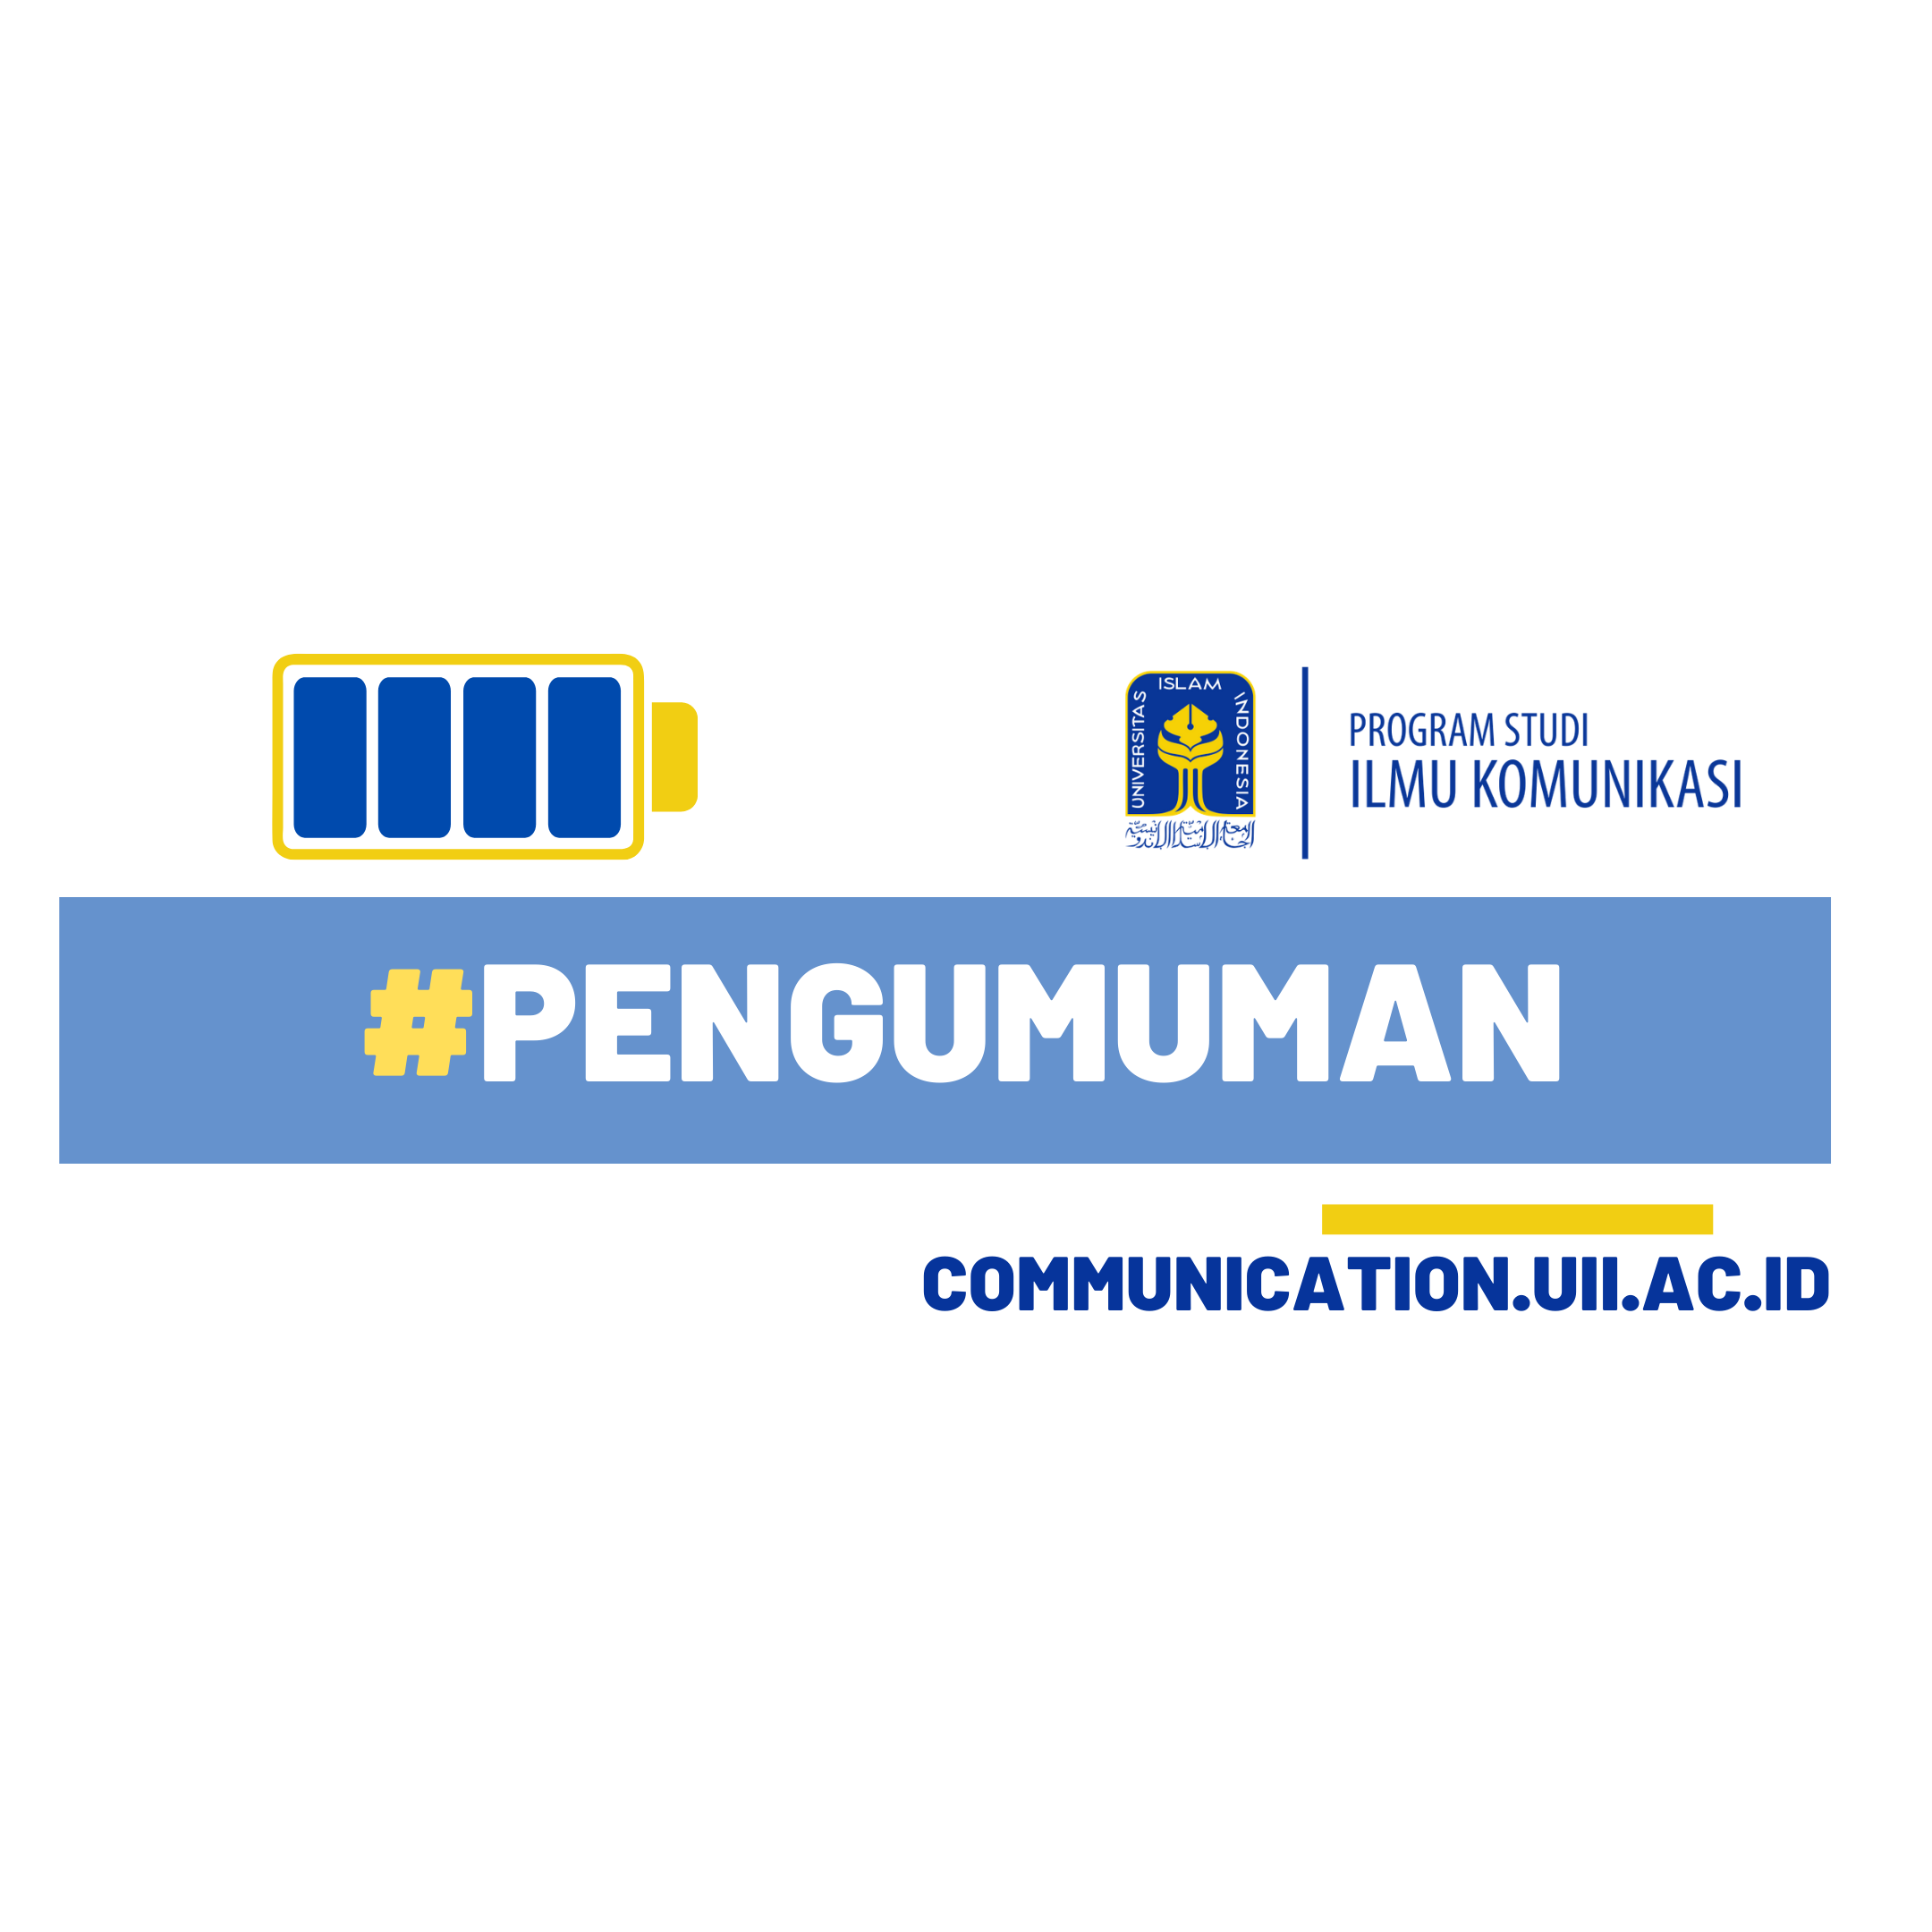 [Tanggal Penting] Jadwal Pendaftaran Yudisium Prodi Ilmu Komunikasi UII Semester Ganjil T.A 2021/2022 (Sept 2021-Februari 2022)